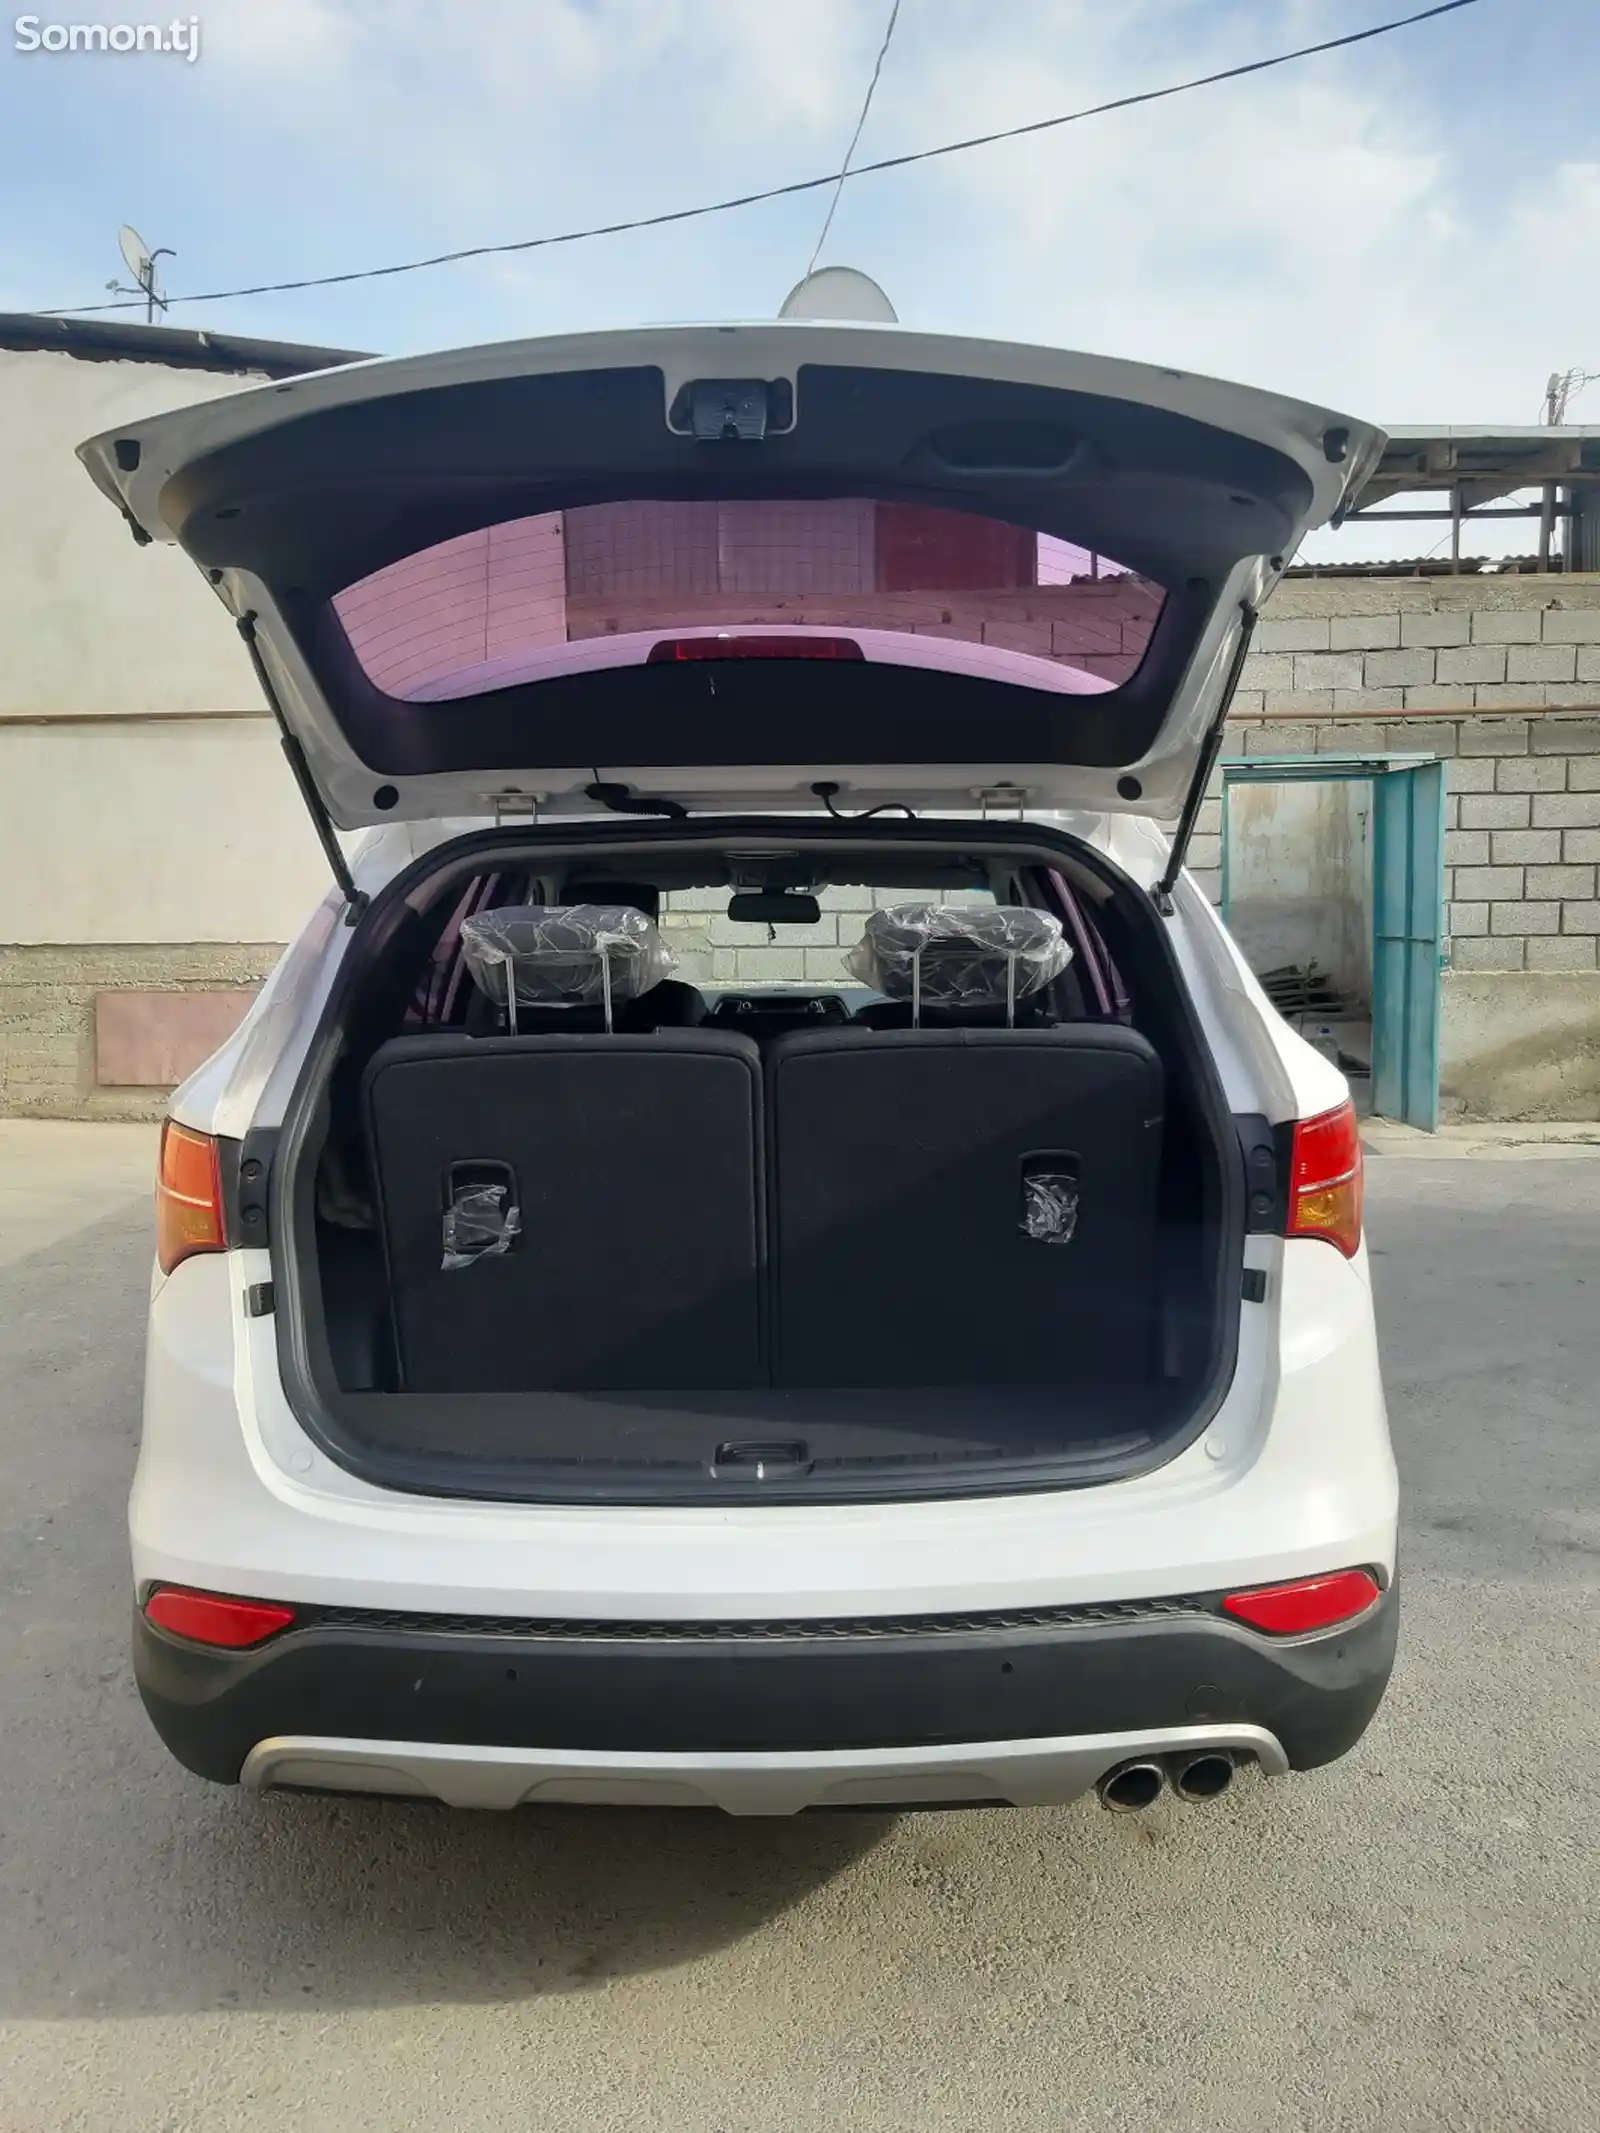 Hyundai Santa Fe, 2014-12